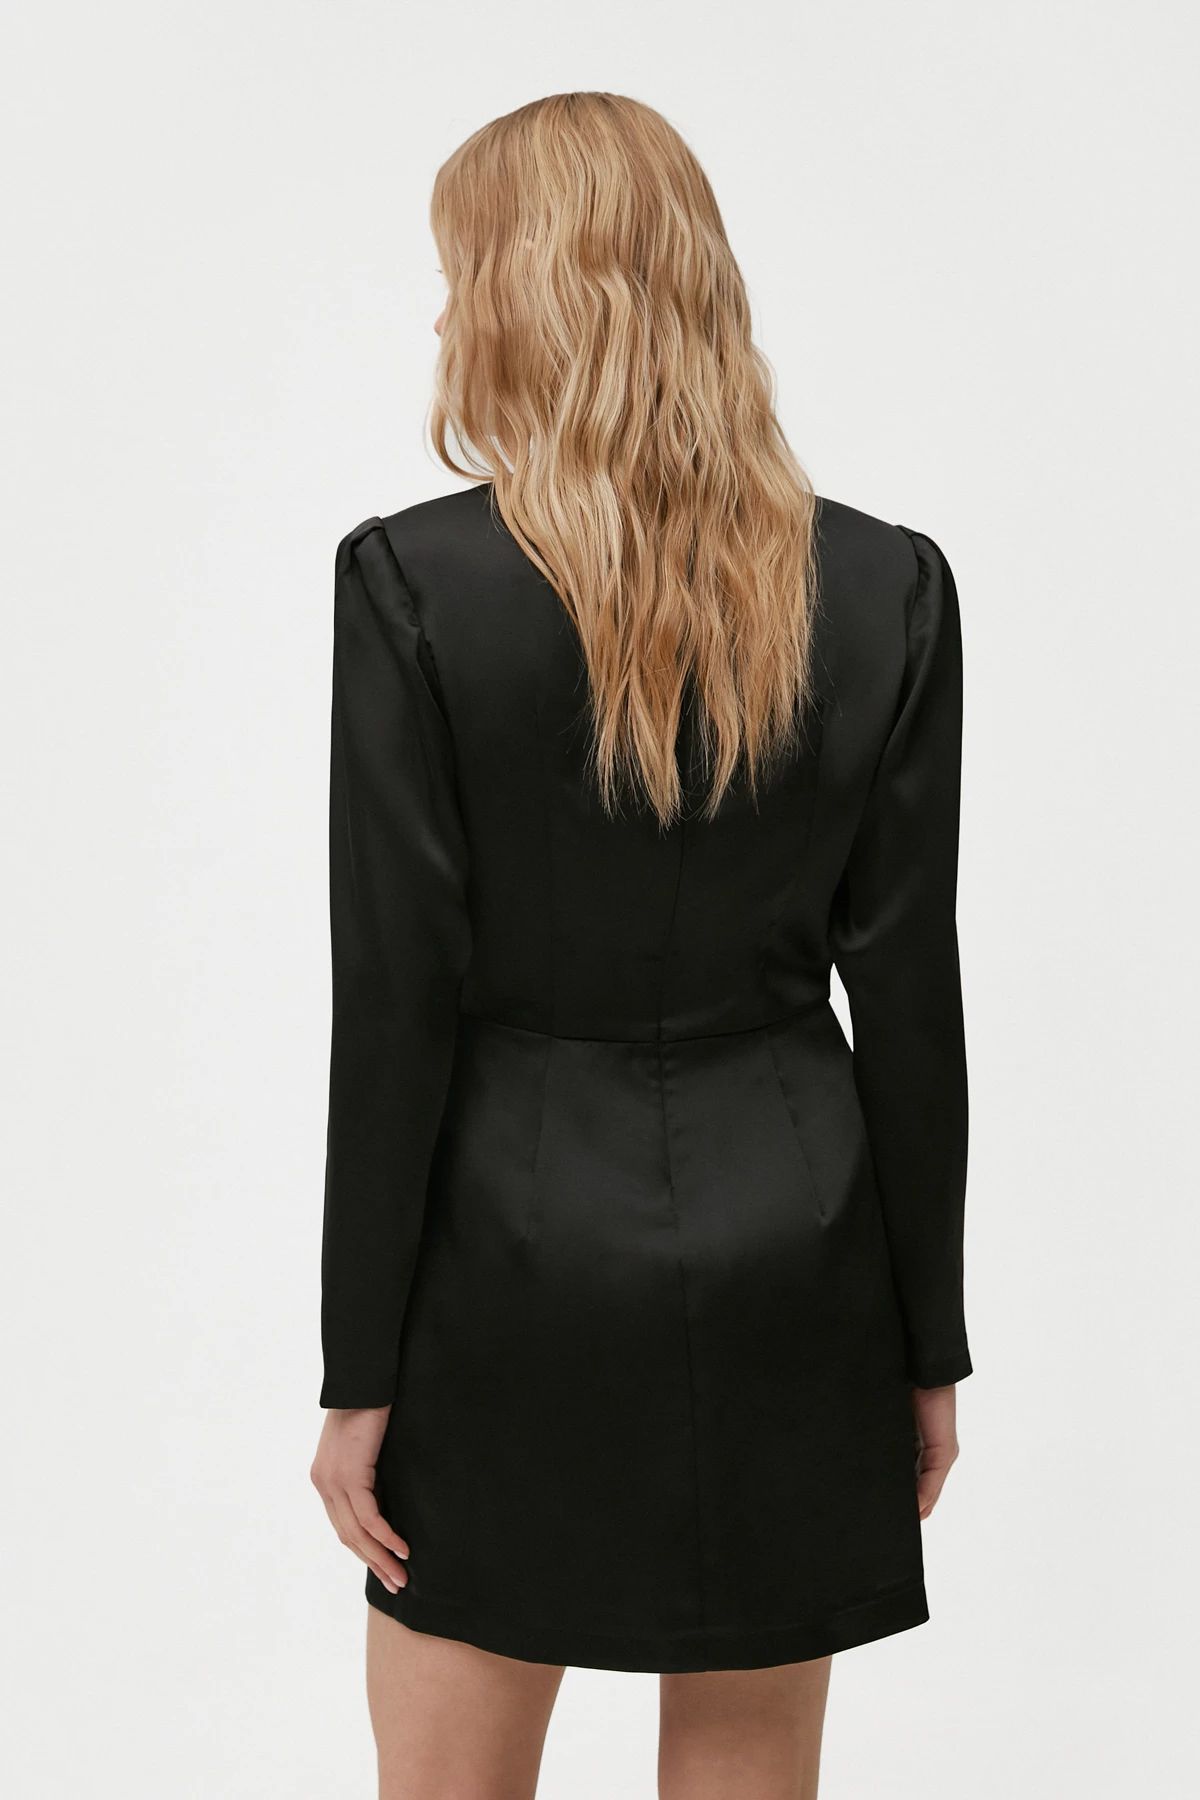 Black draped satin dress, photo 5